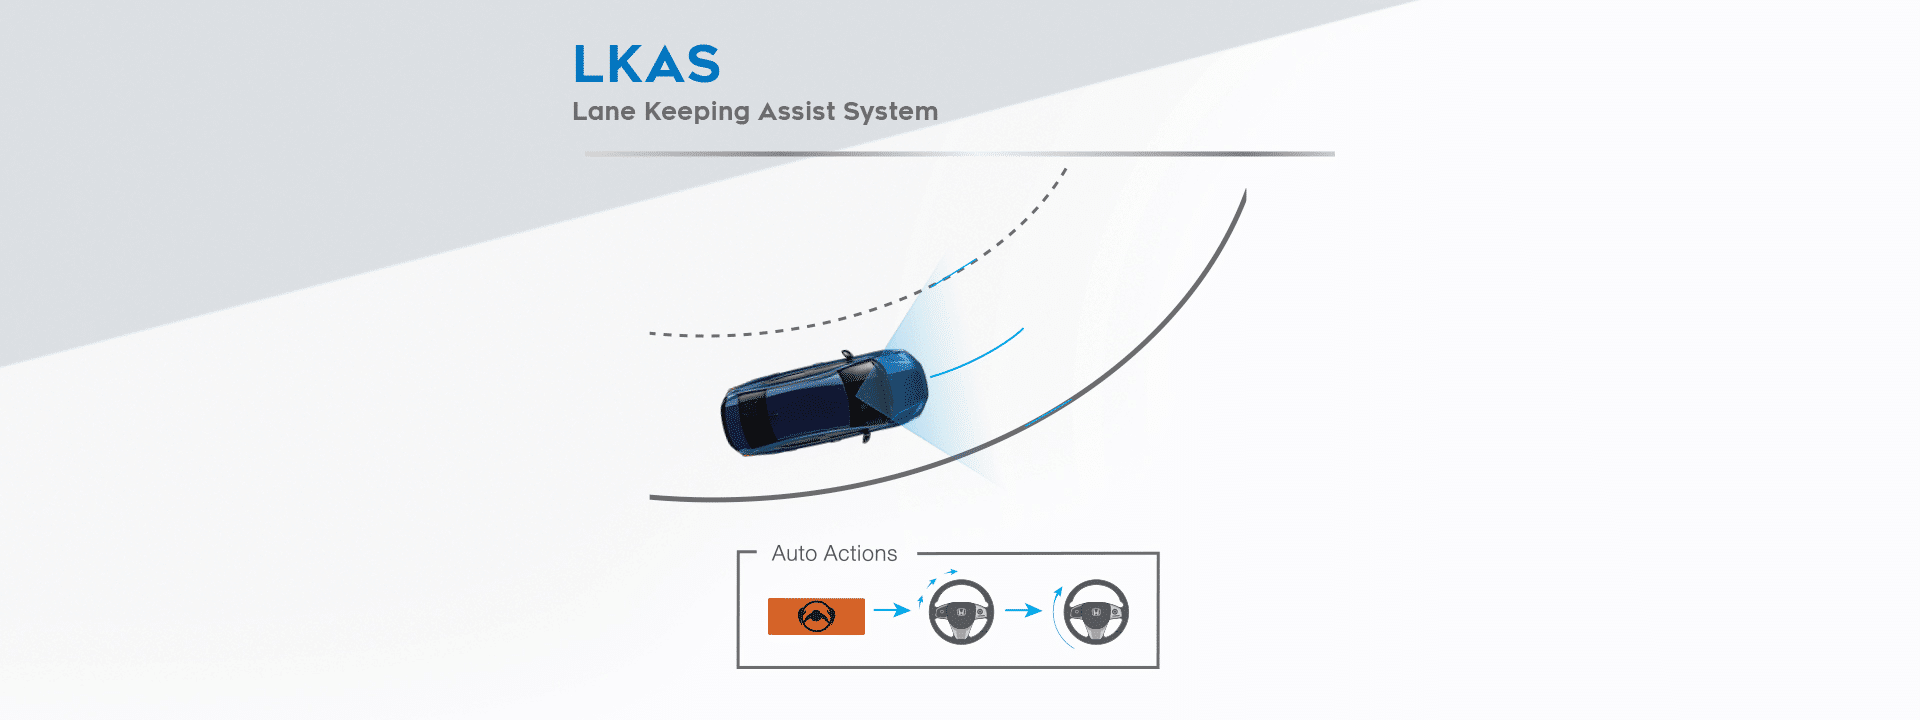 ระบบช่วยควบคุมรถให้อยู่ในช่องทางเดินรถ (Lane Keeping Assist System: LKAS) 